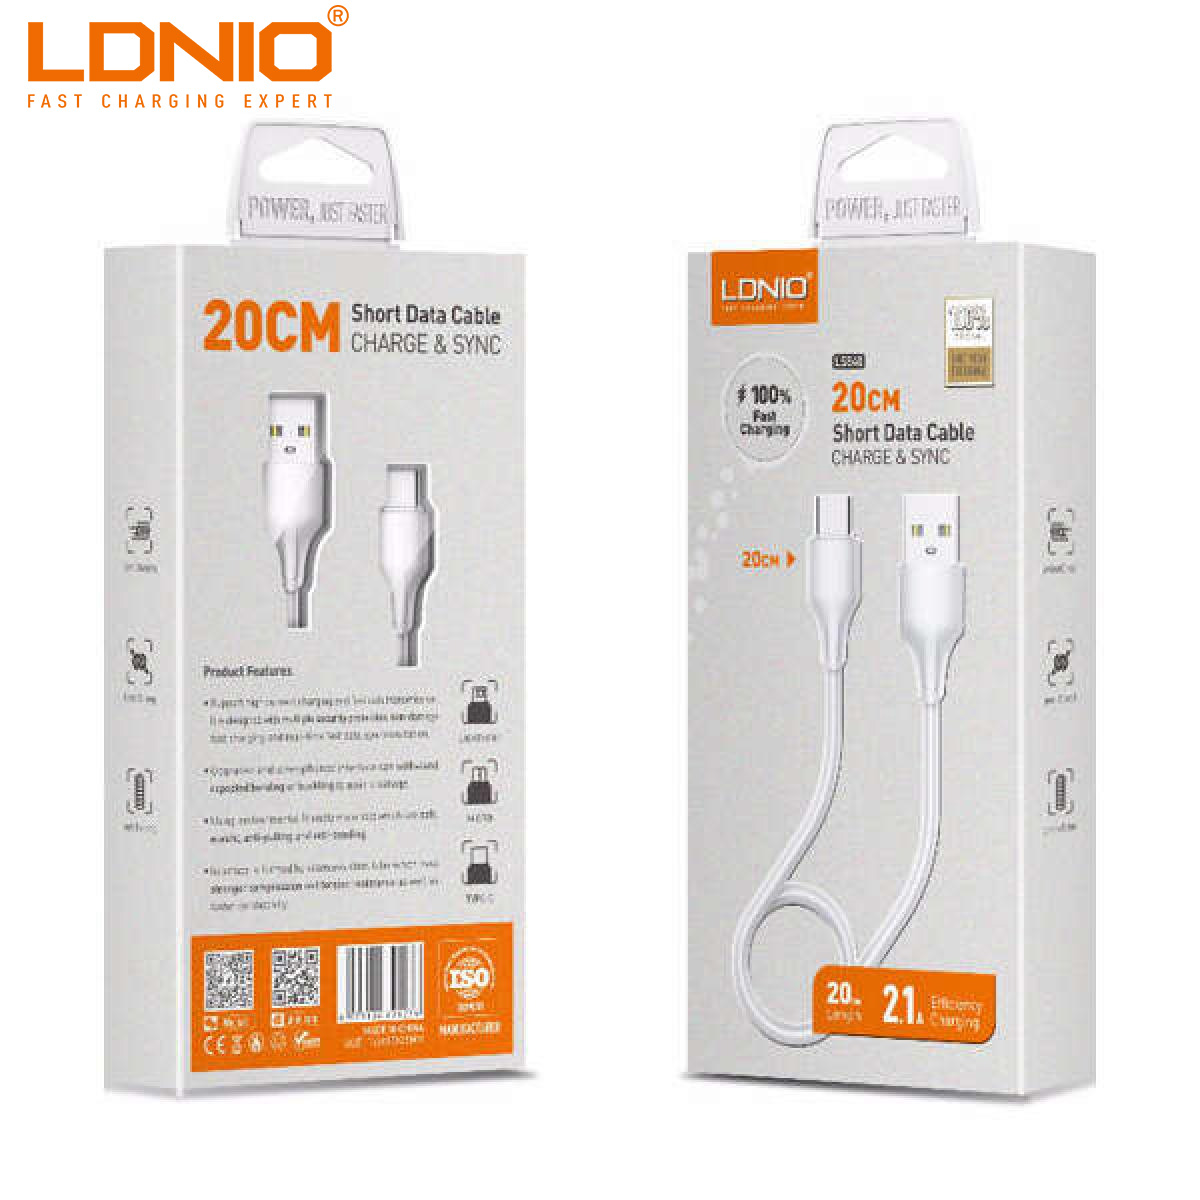 LDNIO LS540 USB DATA CABEL Type-C 20CM